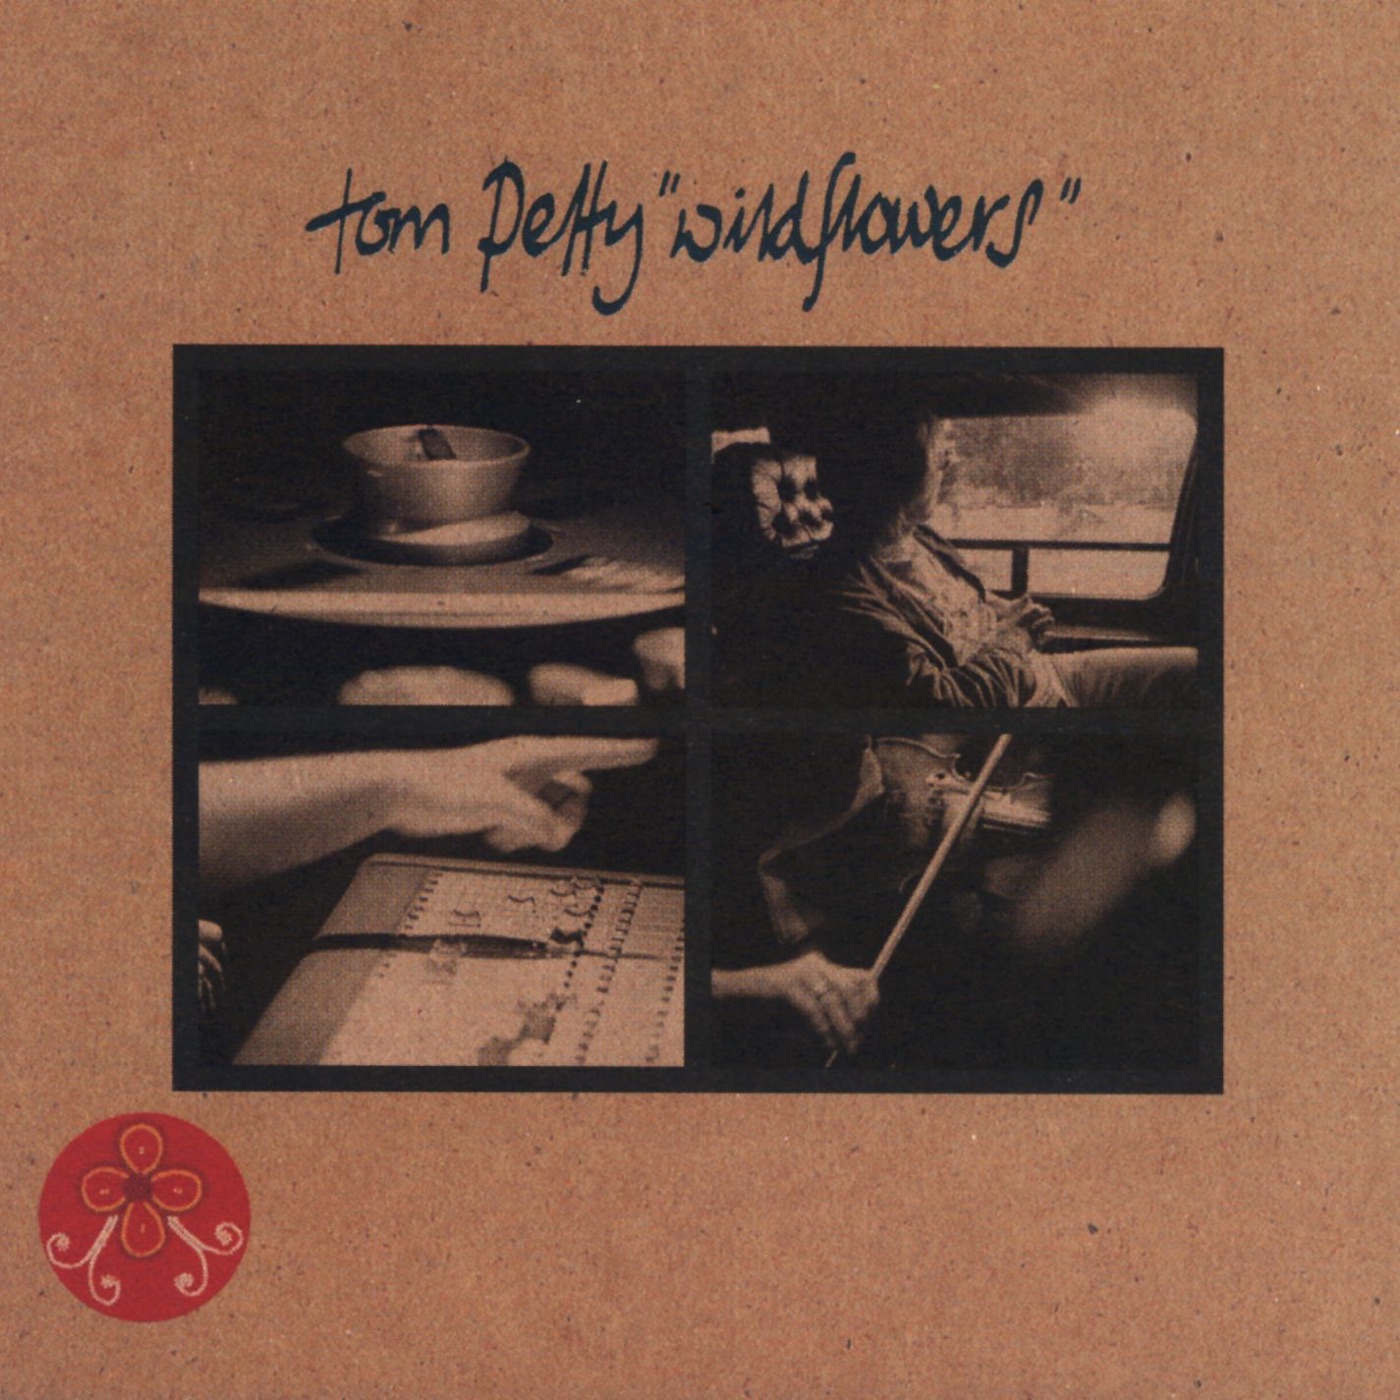 Wildflowers by Tom Petty, Wildflowers